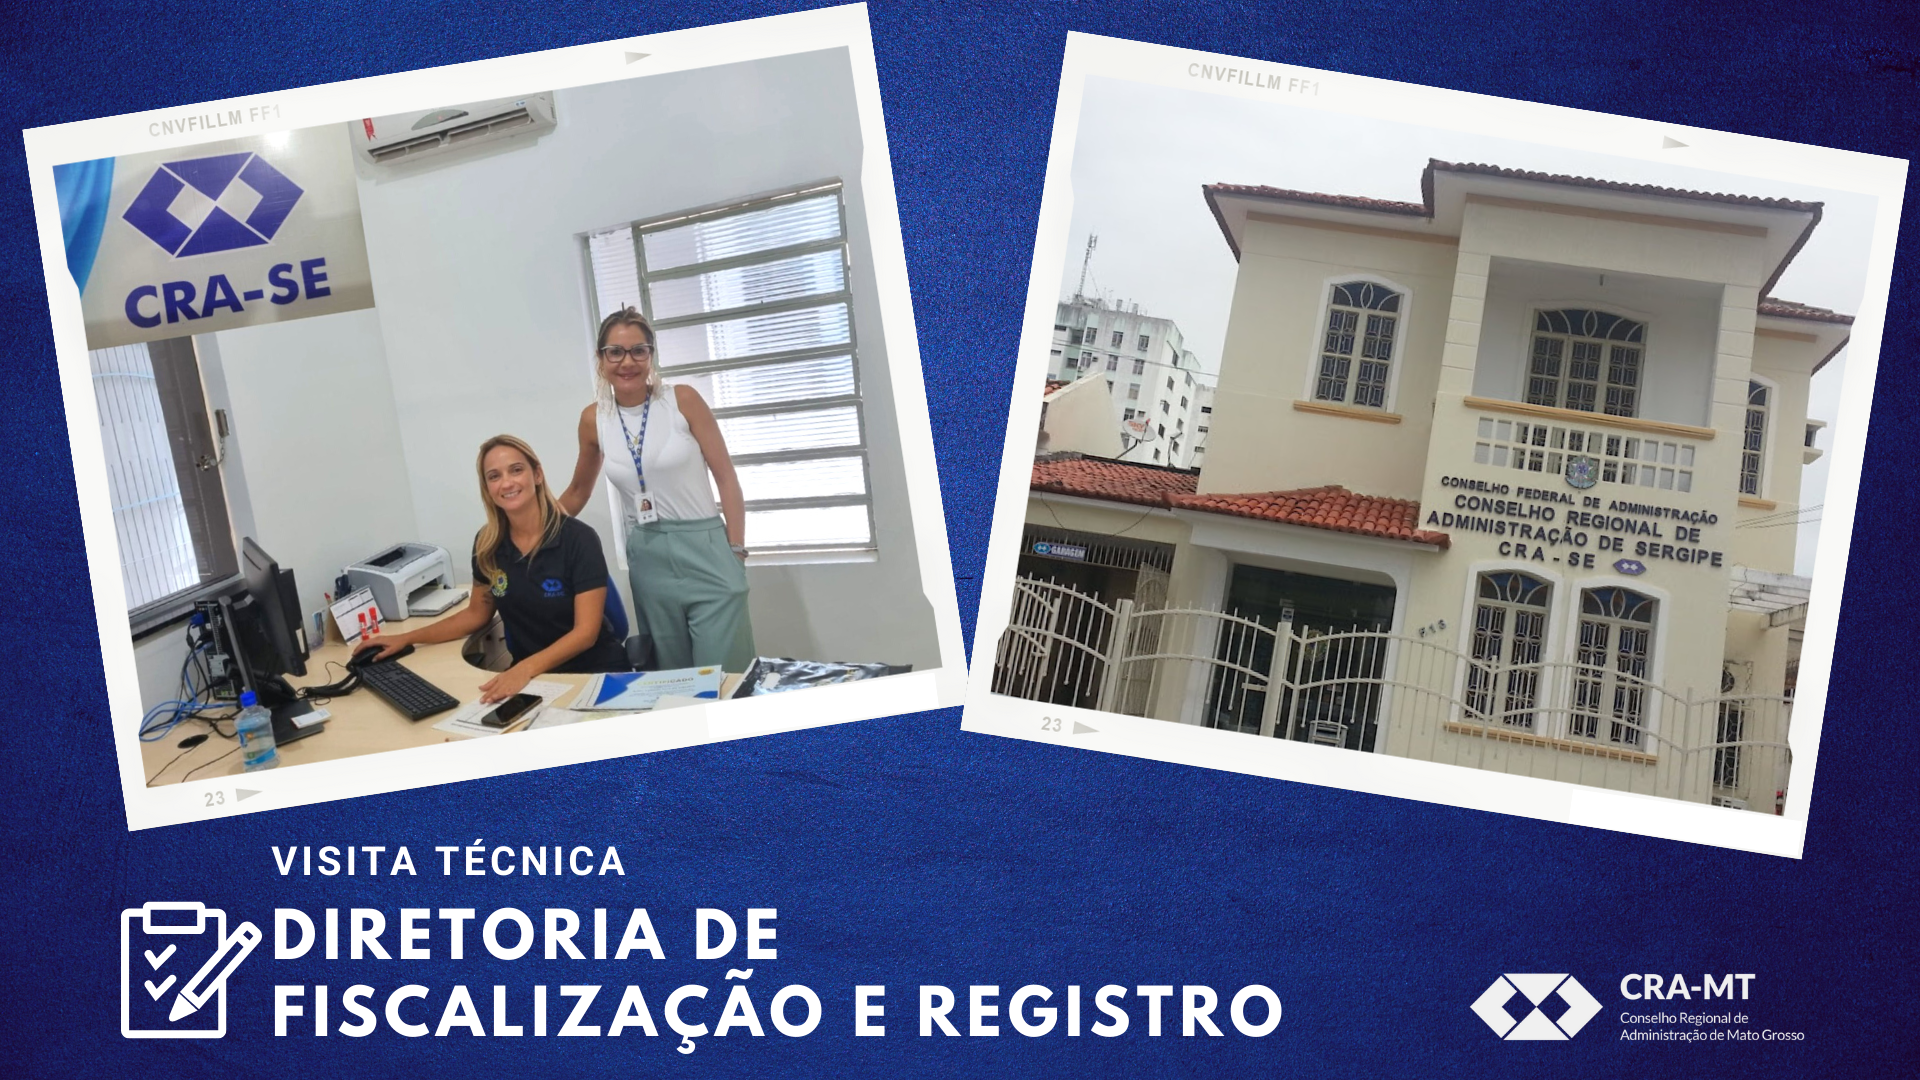 You are currently viewing Visita técnica da Diretoria de Fiscalização e Registro ao CRA-SE